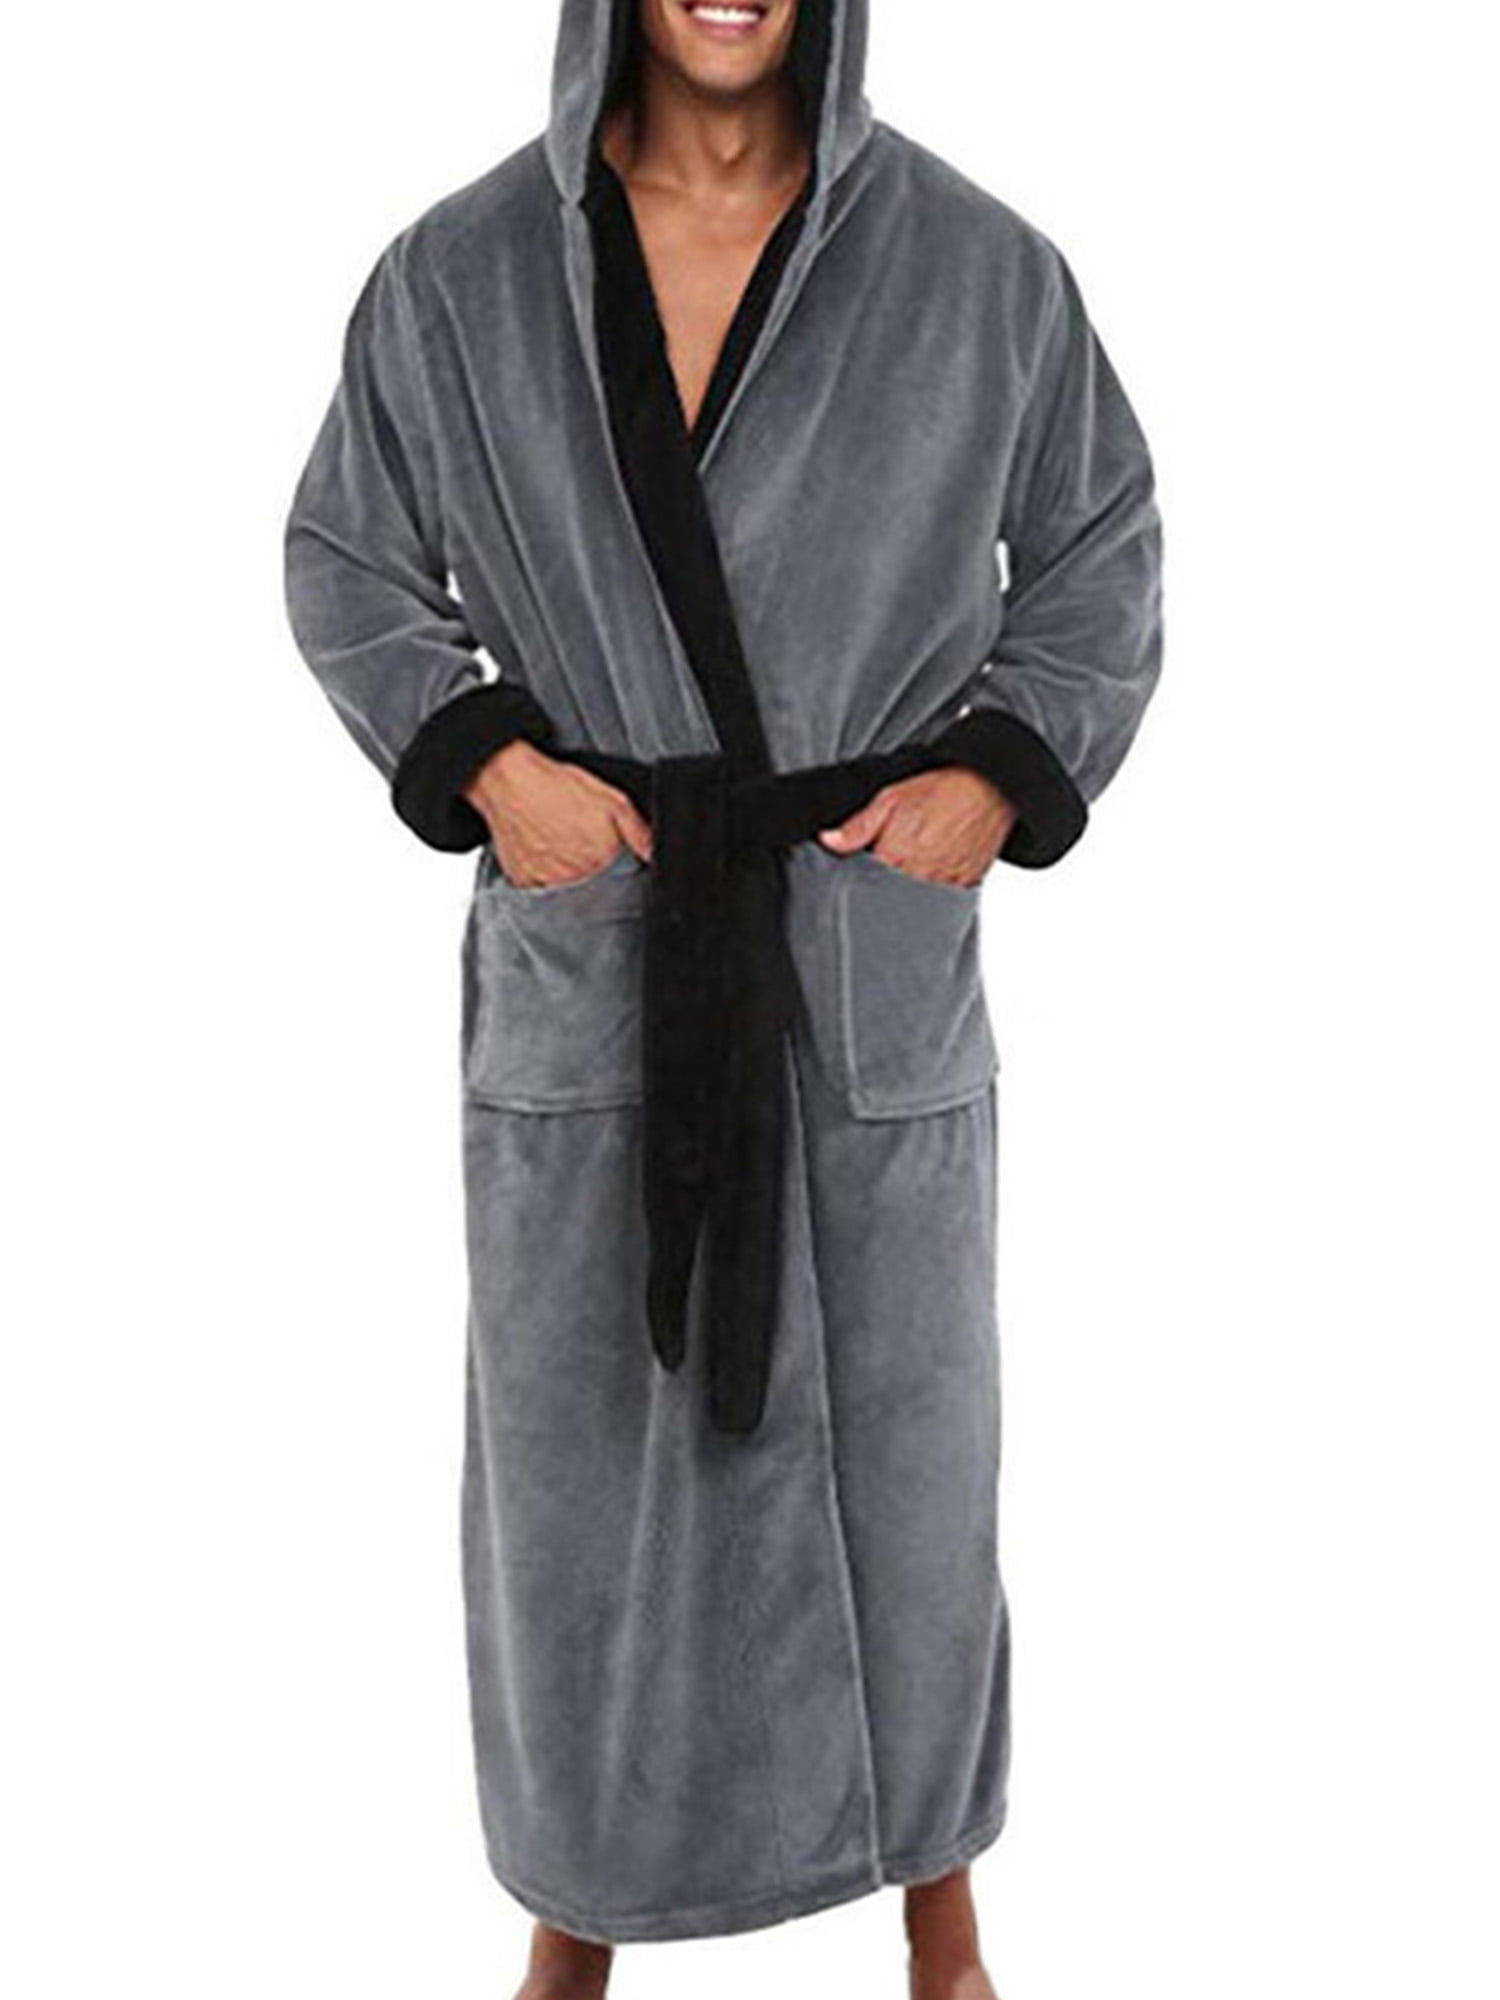 ASOS DESIGN lounge robe in navy fleece | ASOS